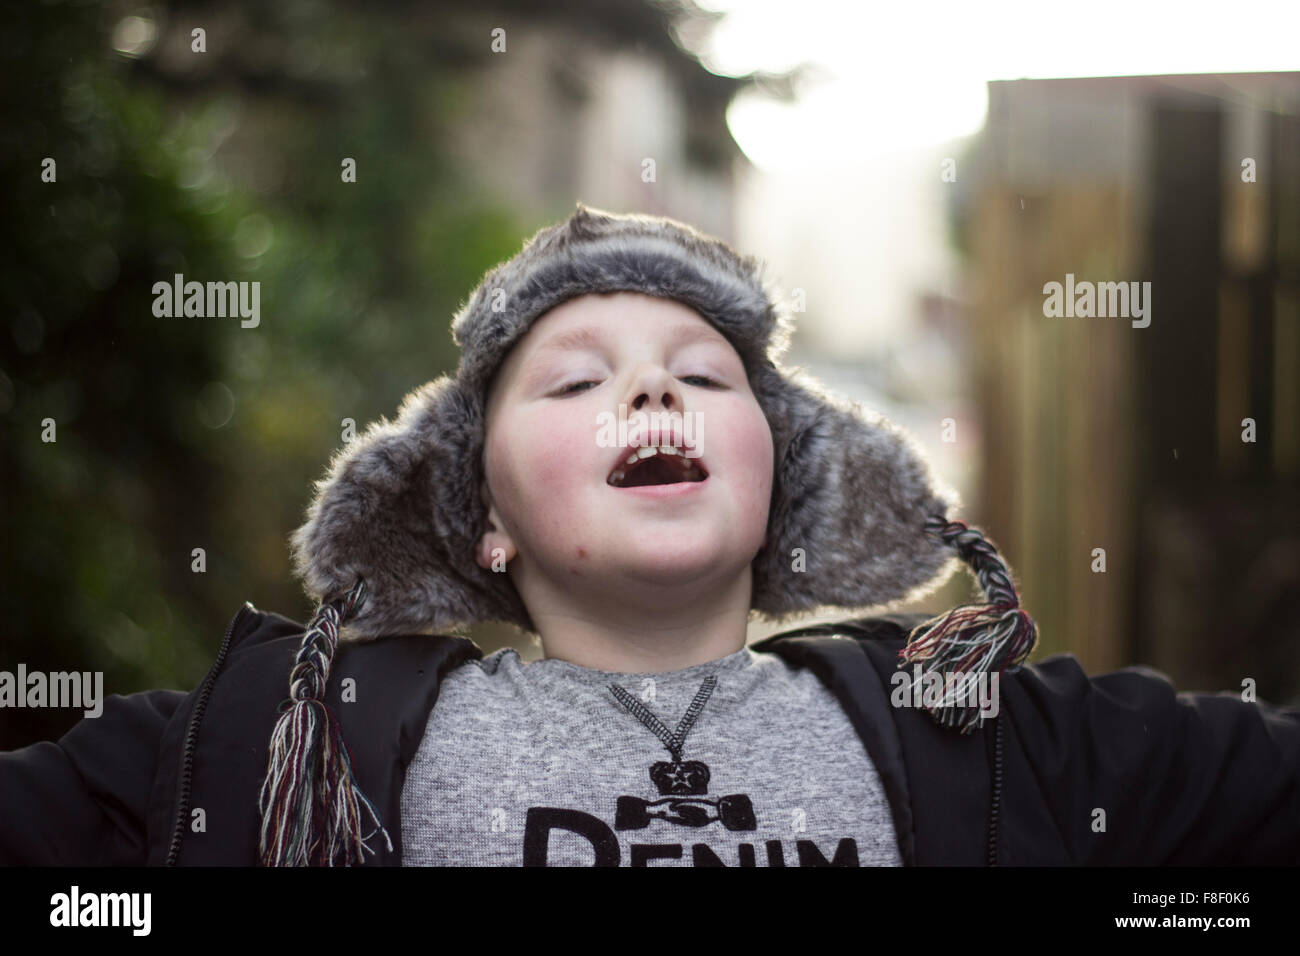 Giovane ragazzo giocando felicemente all'aperto, indossando abiti invernali. Foto Stock